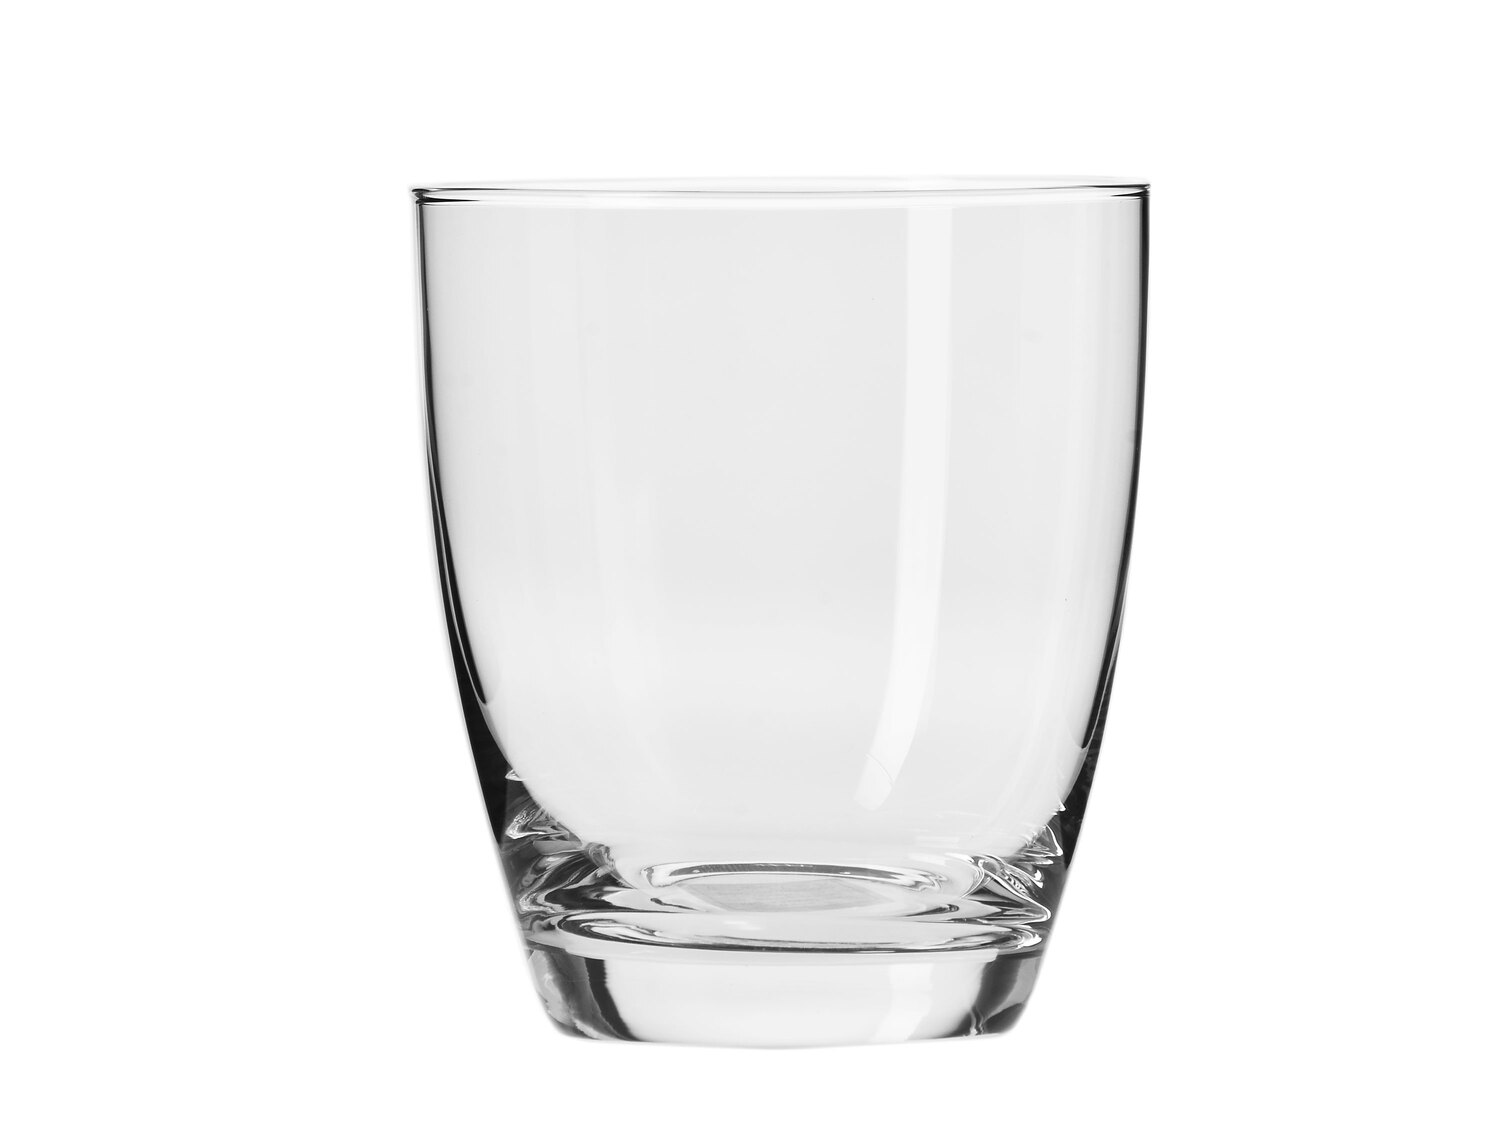 Zestaw 6 szklanek 400 ml , cena 29,99 PLN 
- wysokość: 109 mm
- szkło crystalline ...